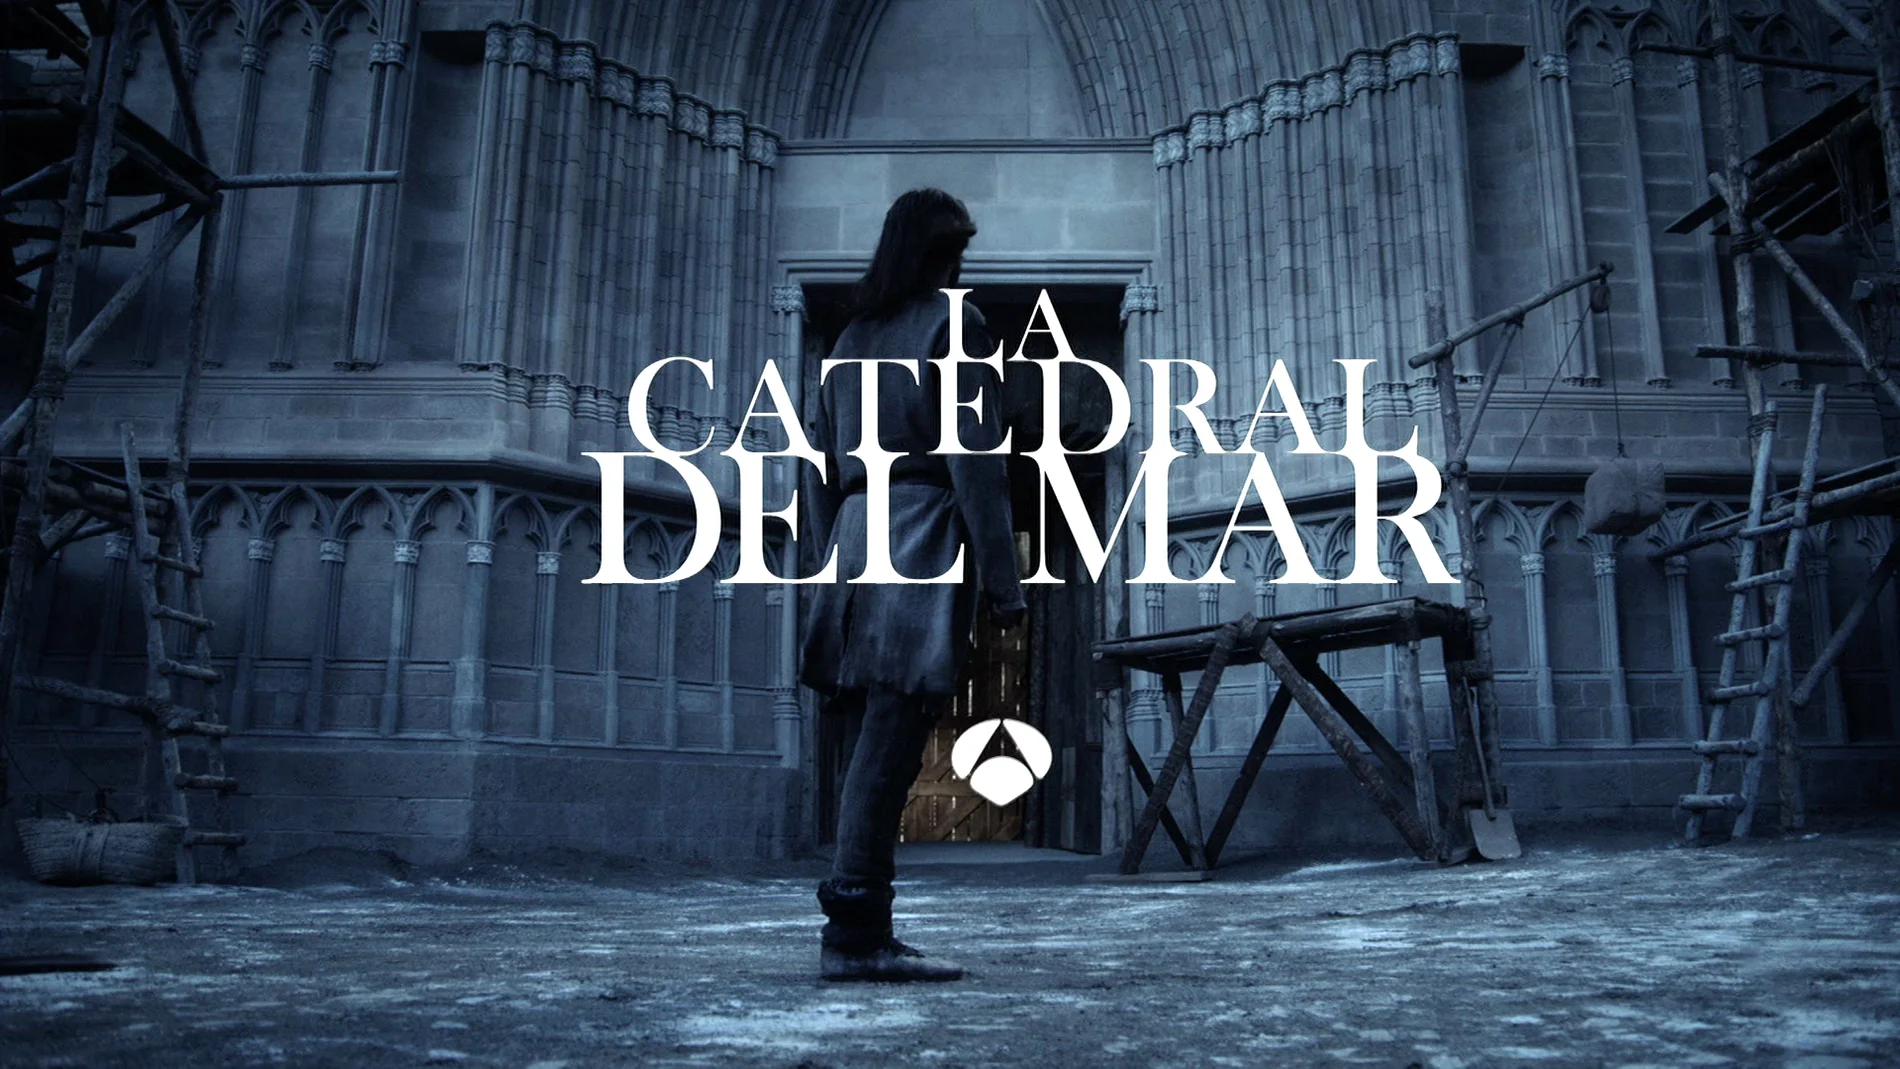 Disfruta de un avance en exclusiva de 'La Catedral del Mar' el próximo martes en Antena 3 